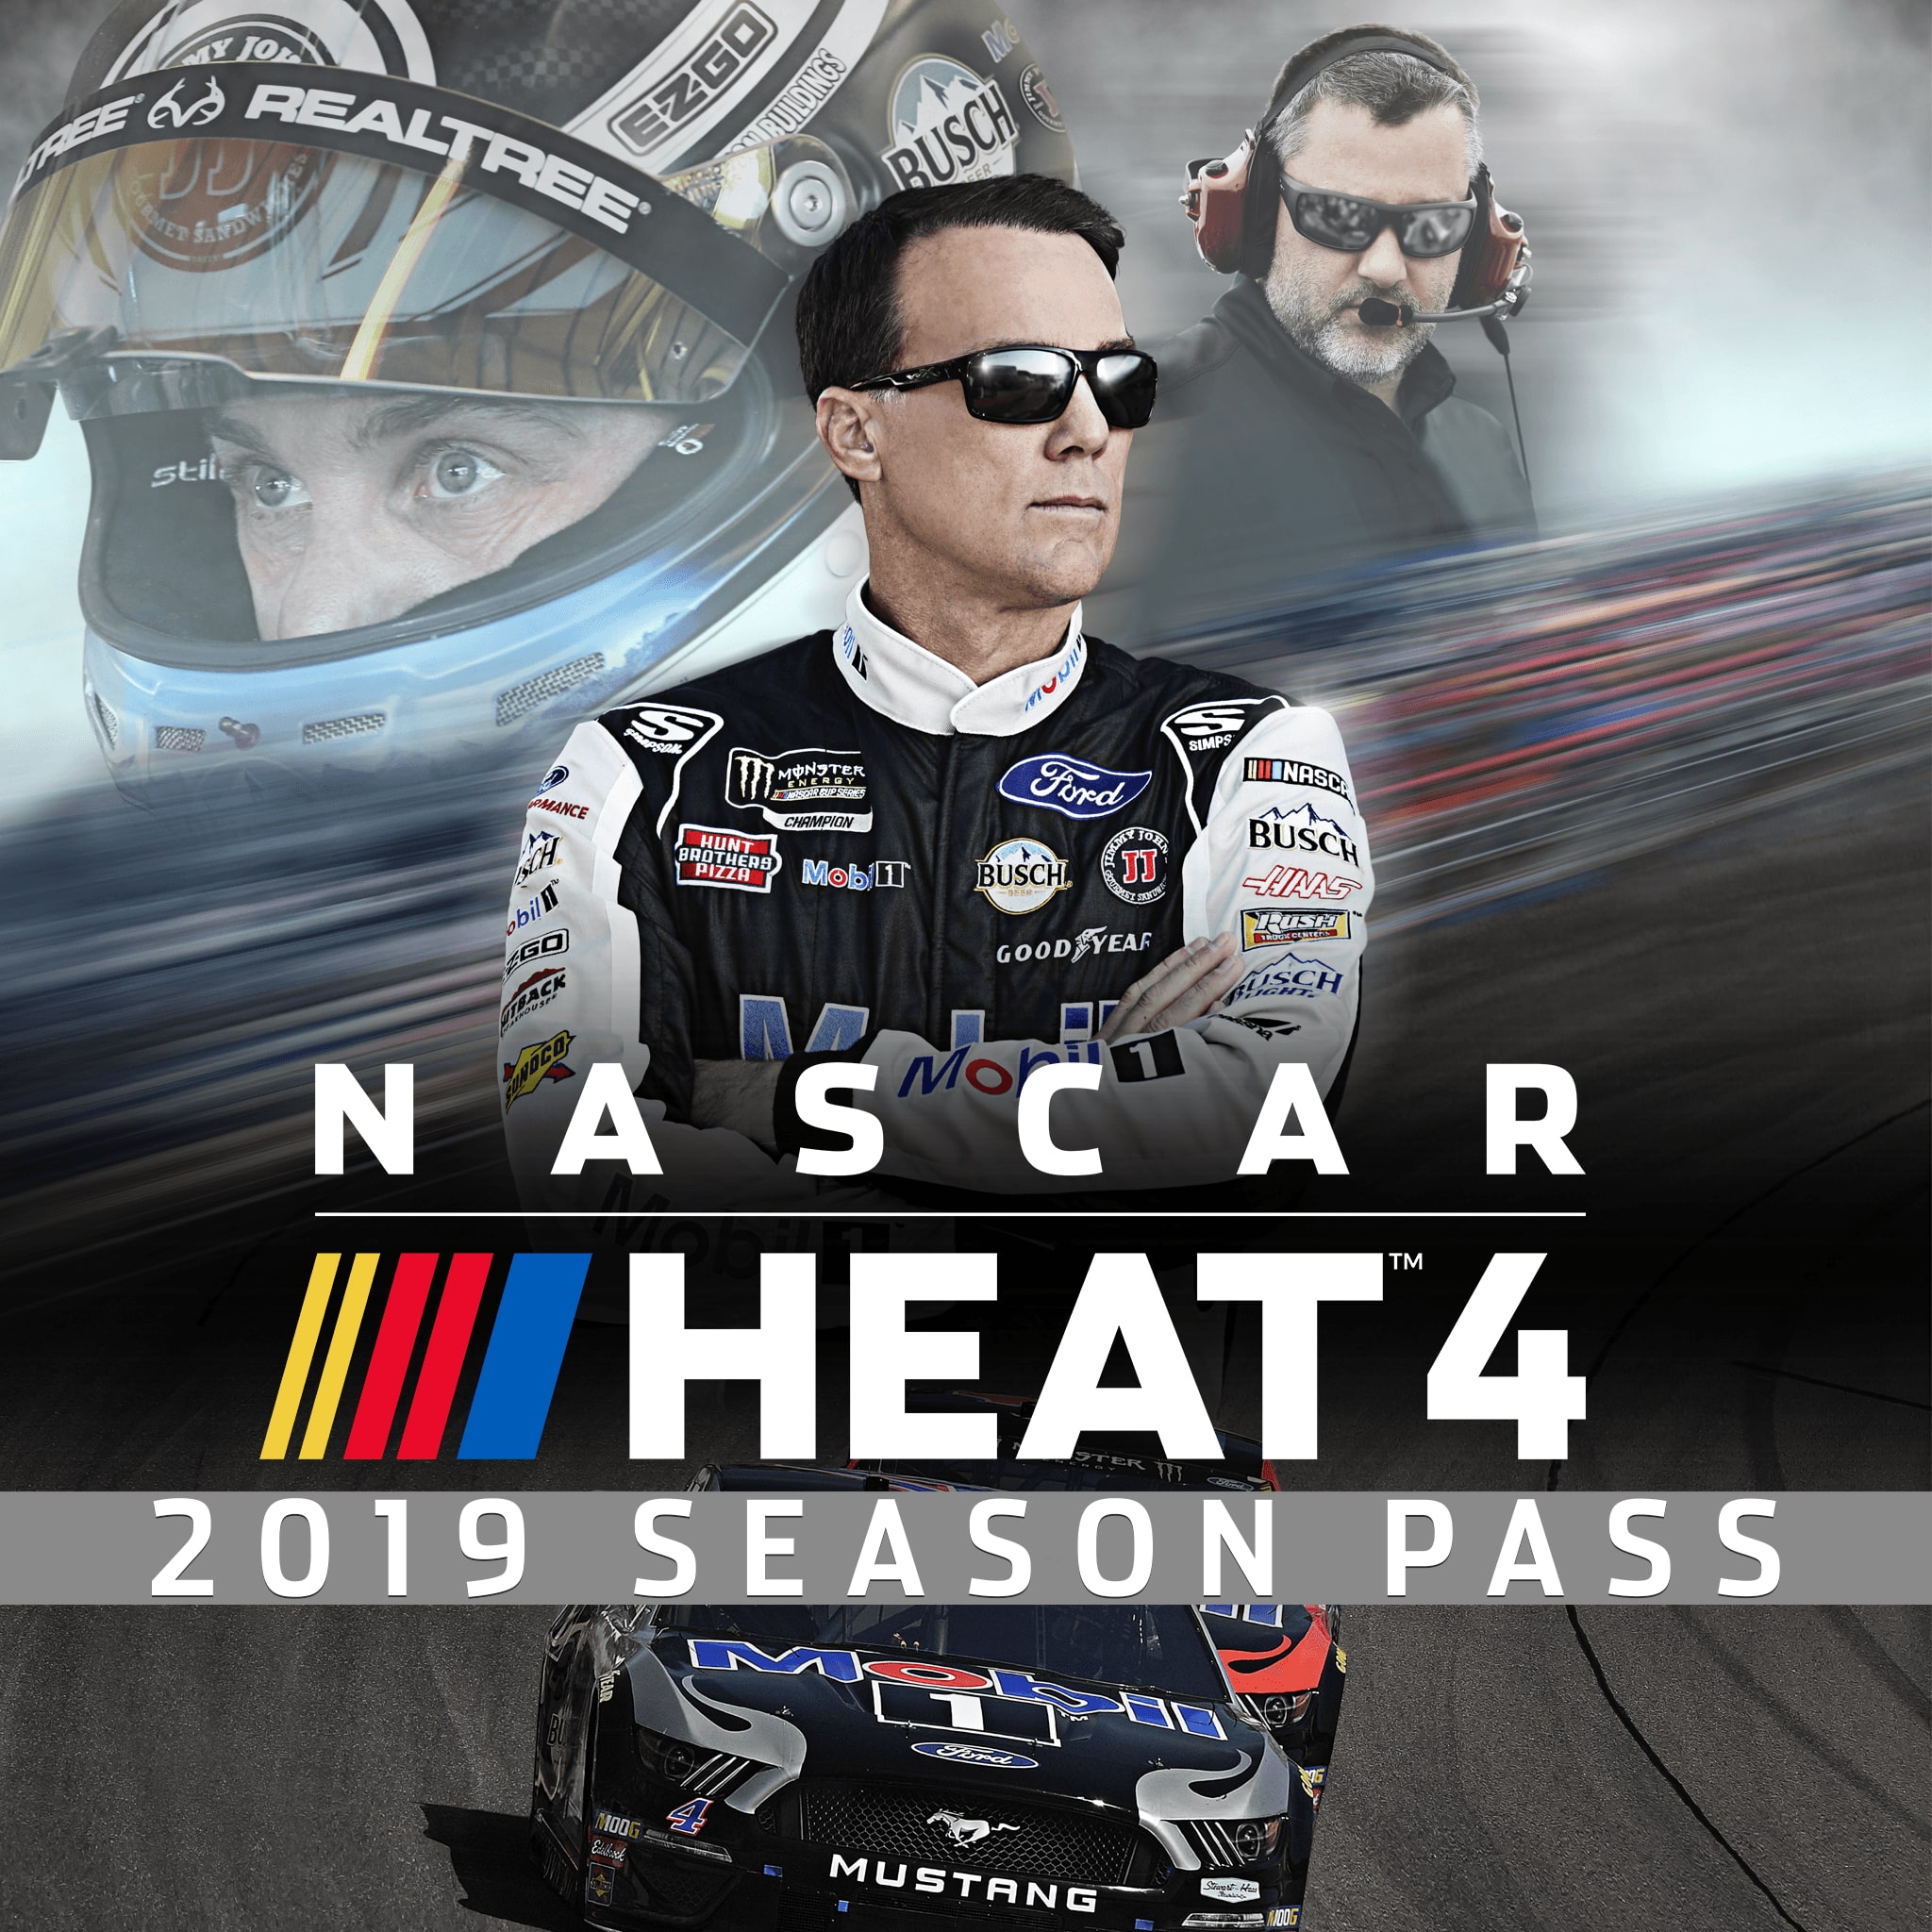 NASCAR Heat 4 - 2019 Season Pass